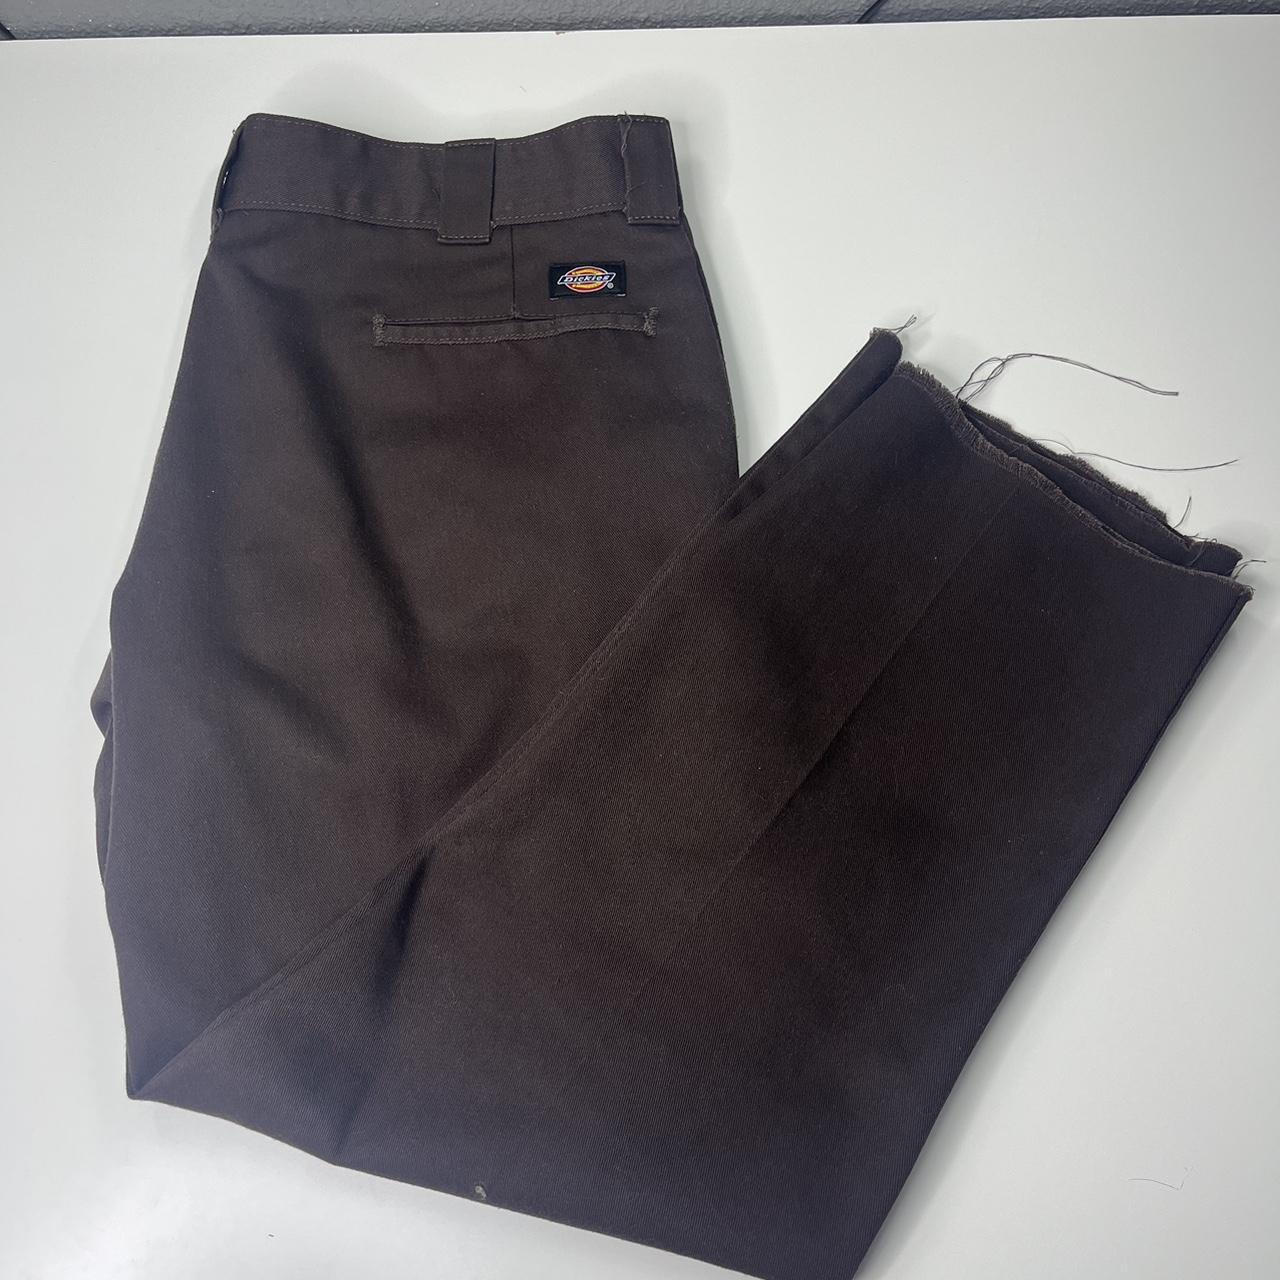 Chocolate brown dickies pants -Size-36:28 -Great... - Depop